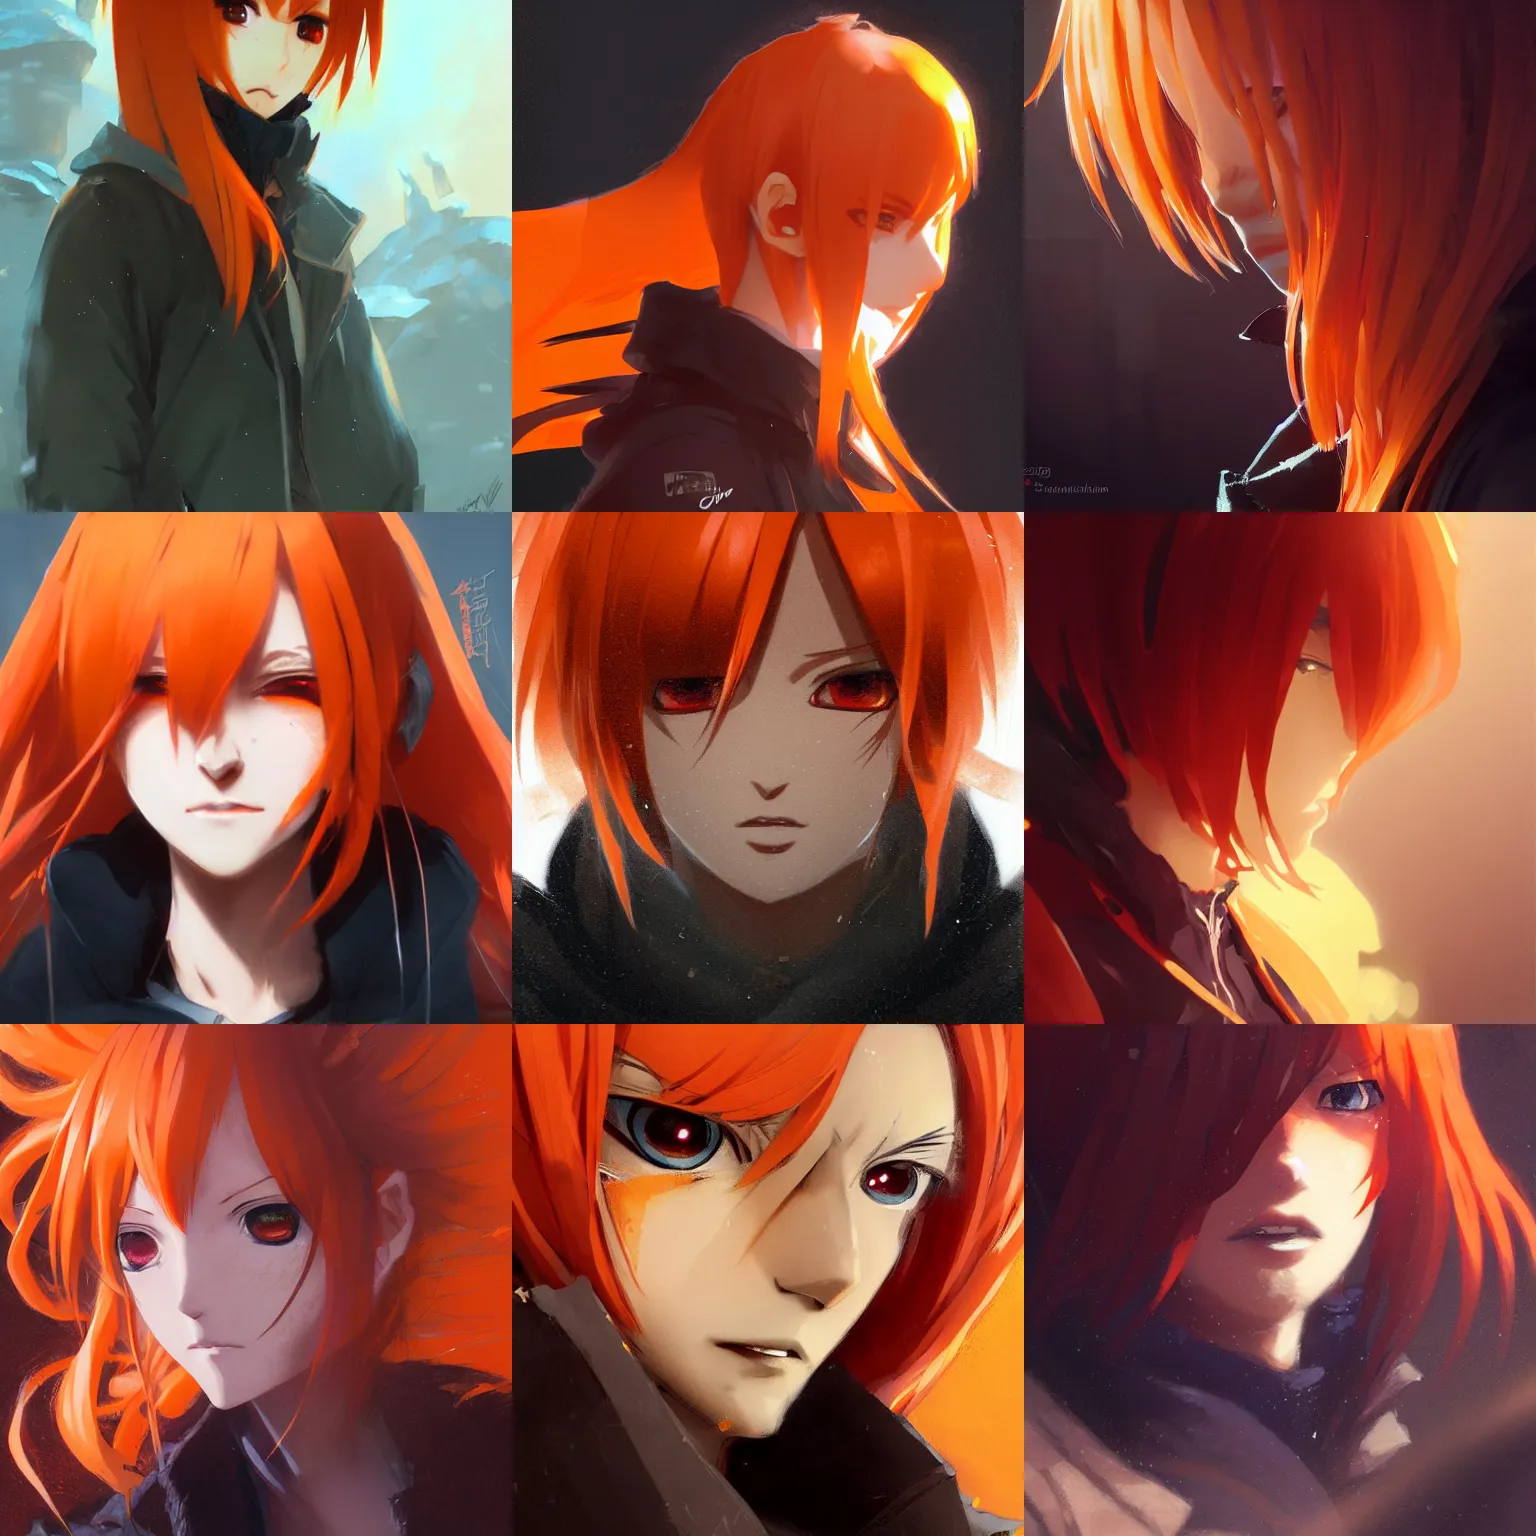 Prompt: Anime Character close up, Orange Gradient Hair, black and orange coat, orange pupils, backroom background, art by greg rutkowski, thomas kindkade